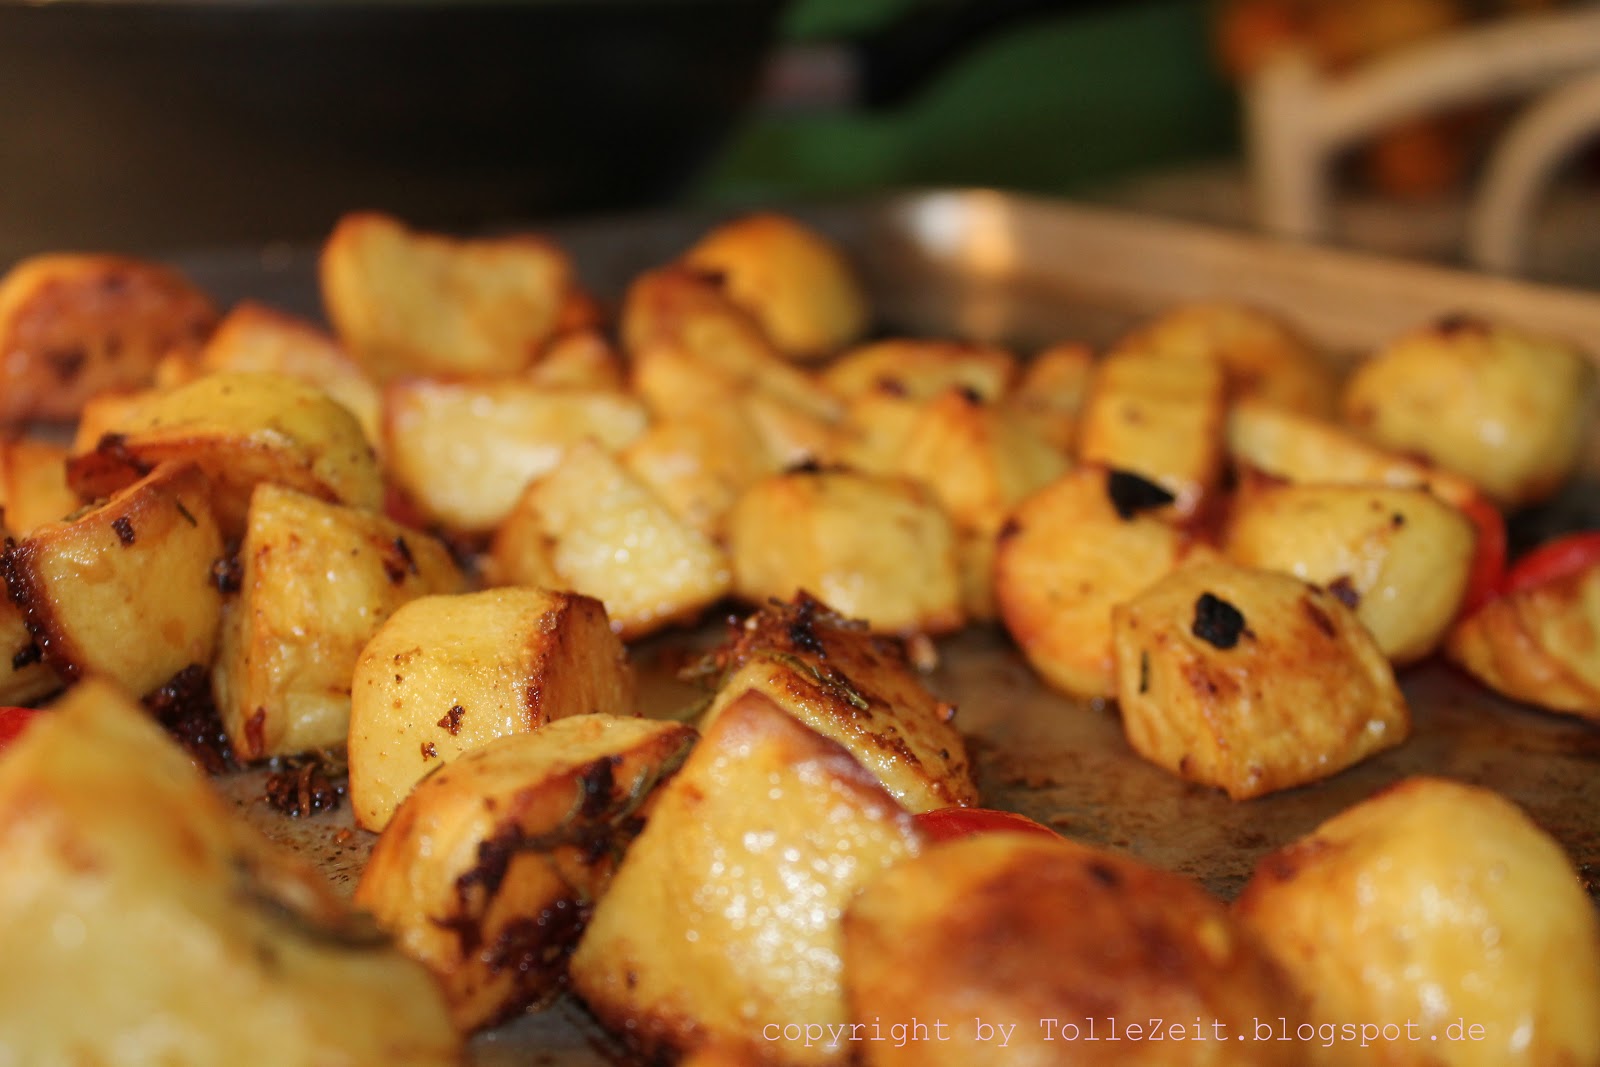 Tolle Zeit: Knoblauch-Paprika-Kartoffeln aus dem Ofen